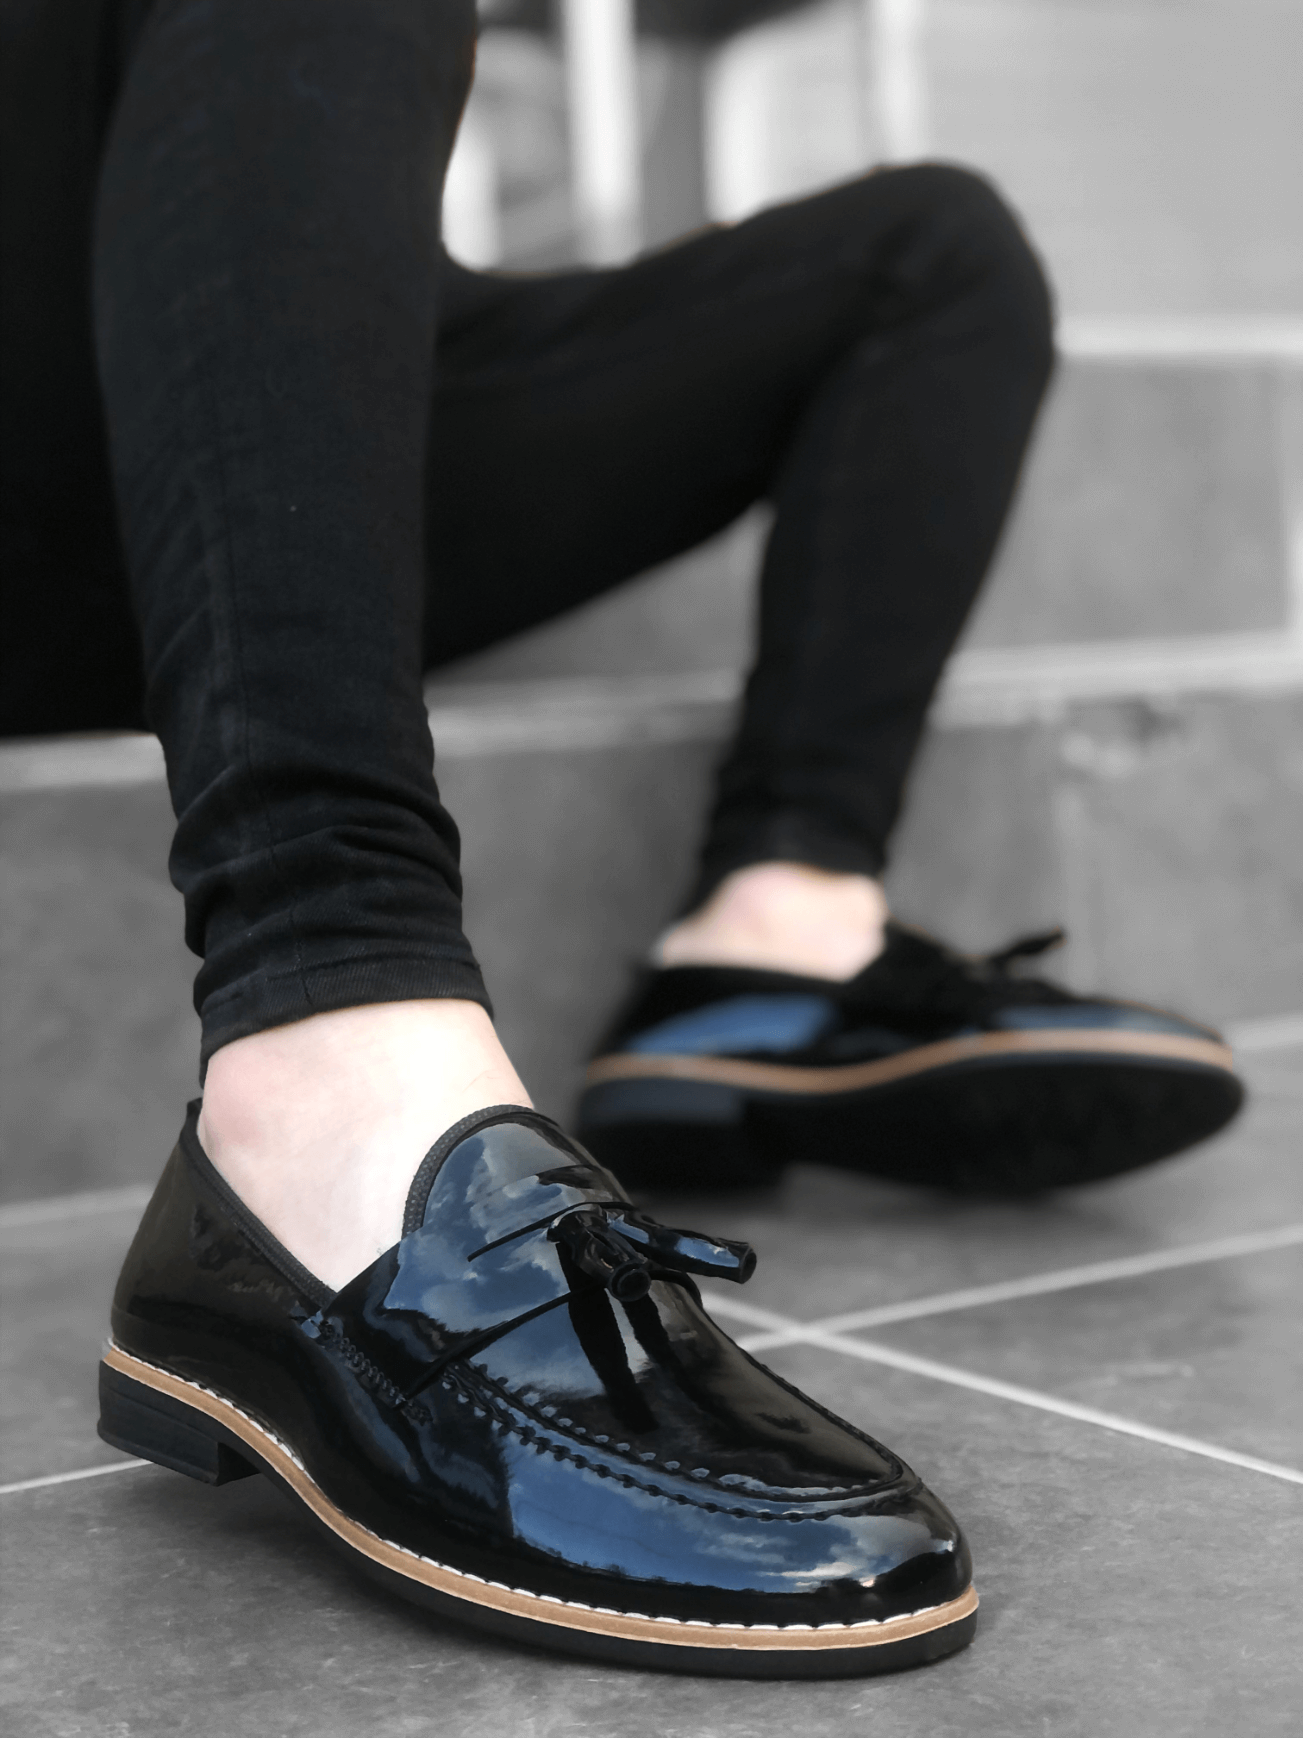 CLZ946 Rugan Püsküllü Corcik Siyah Klasik Erkek Ayakkabısı